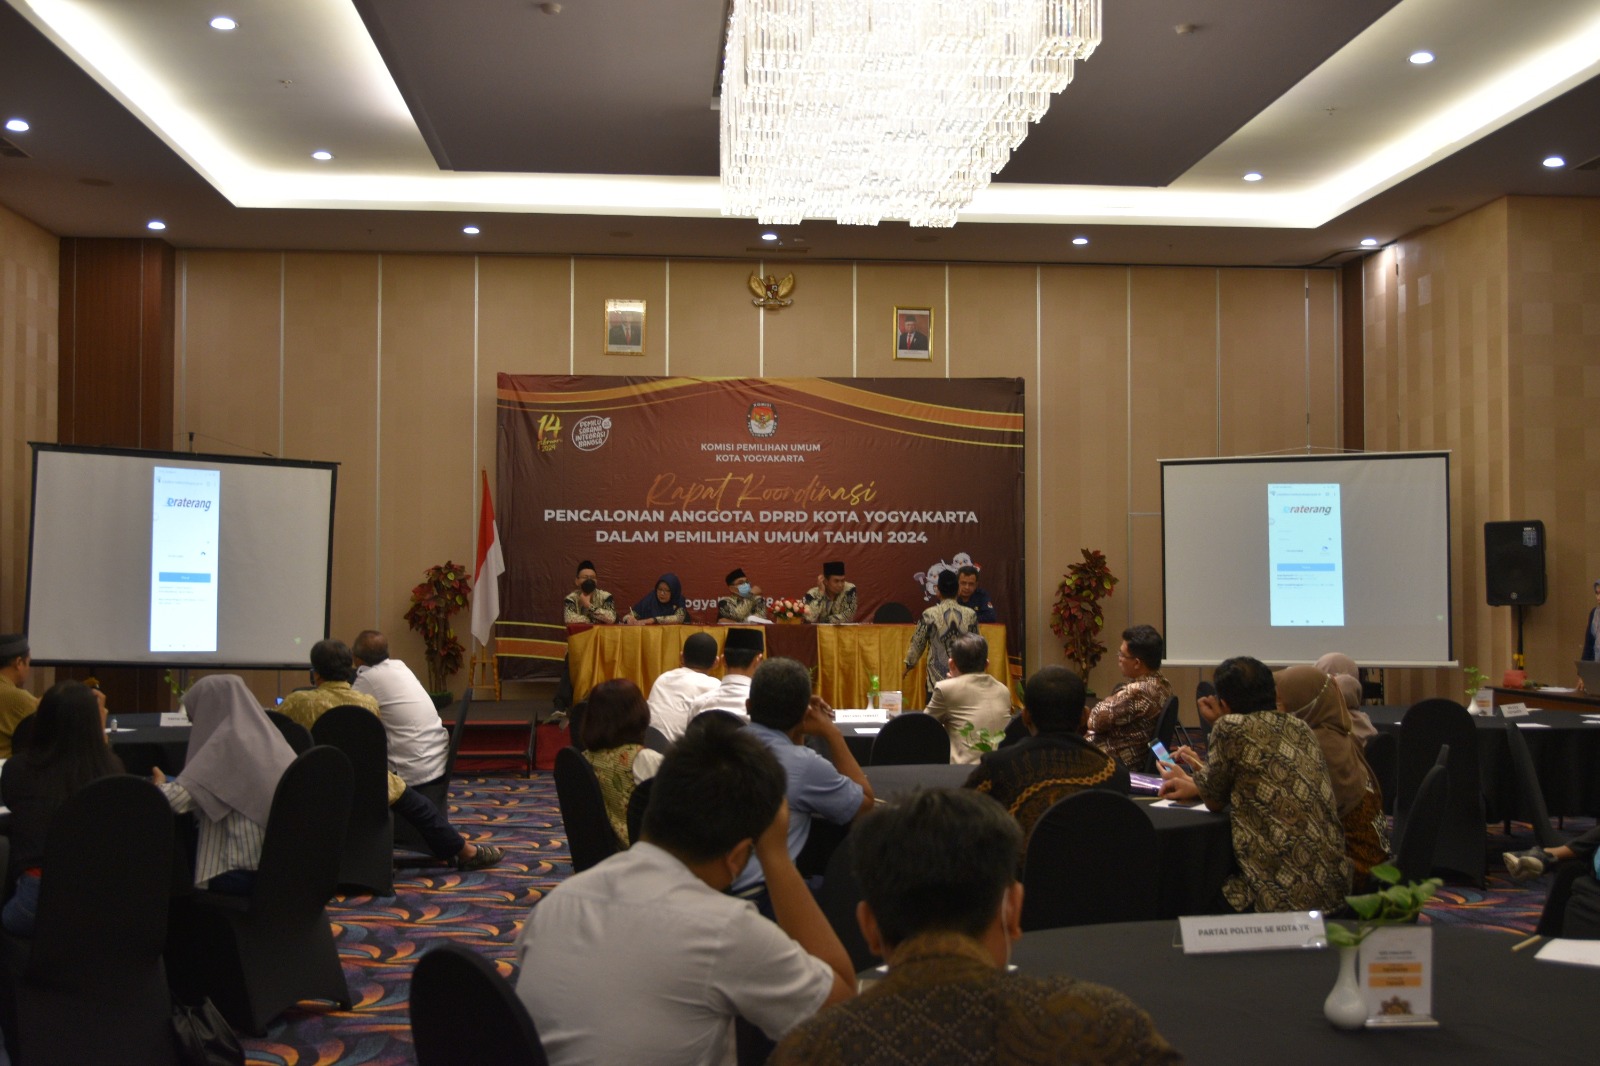 Ketua Pengadilan Negeri Yogyakarta Menghadiri Rapat Koordinasi Pencalonan Anggota DPRD Kota Yogyakarta Pemilu Tahun 2024